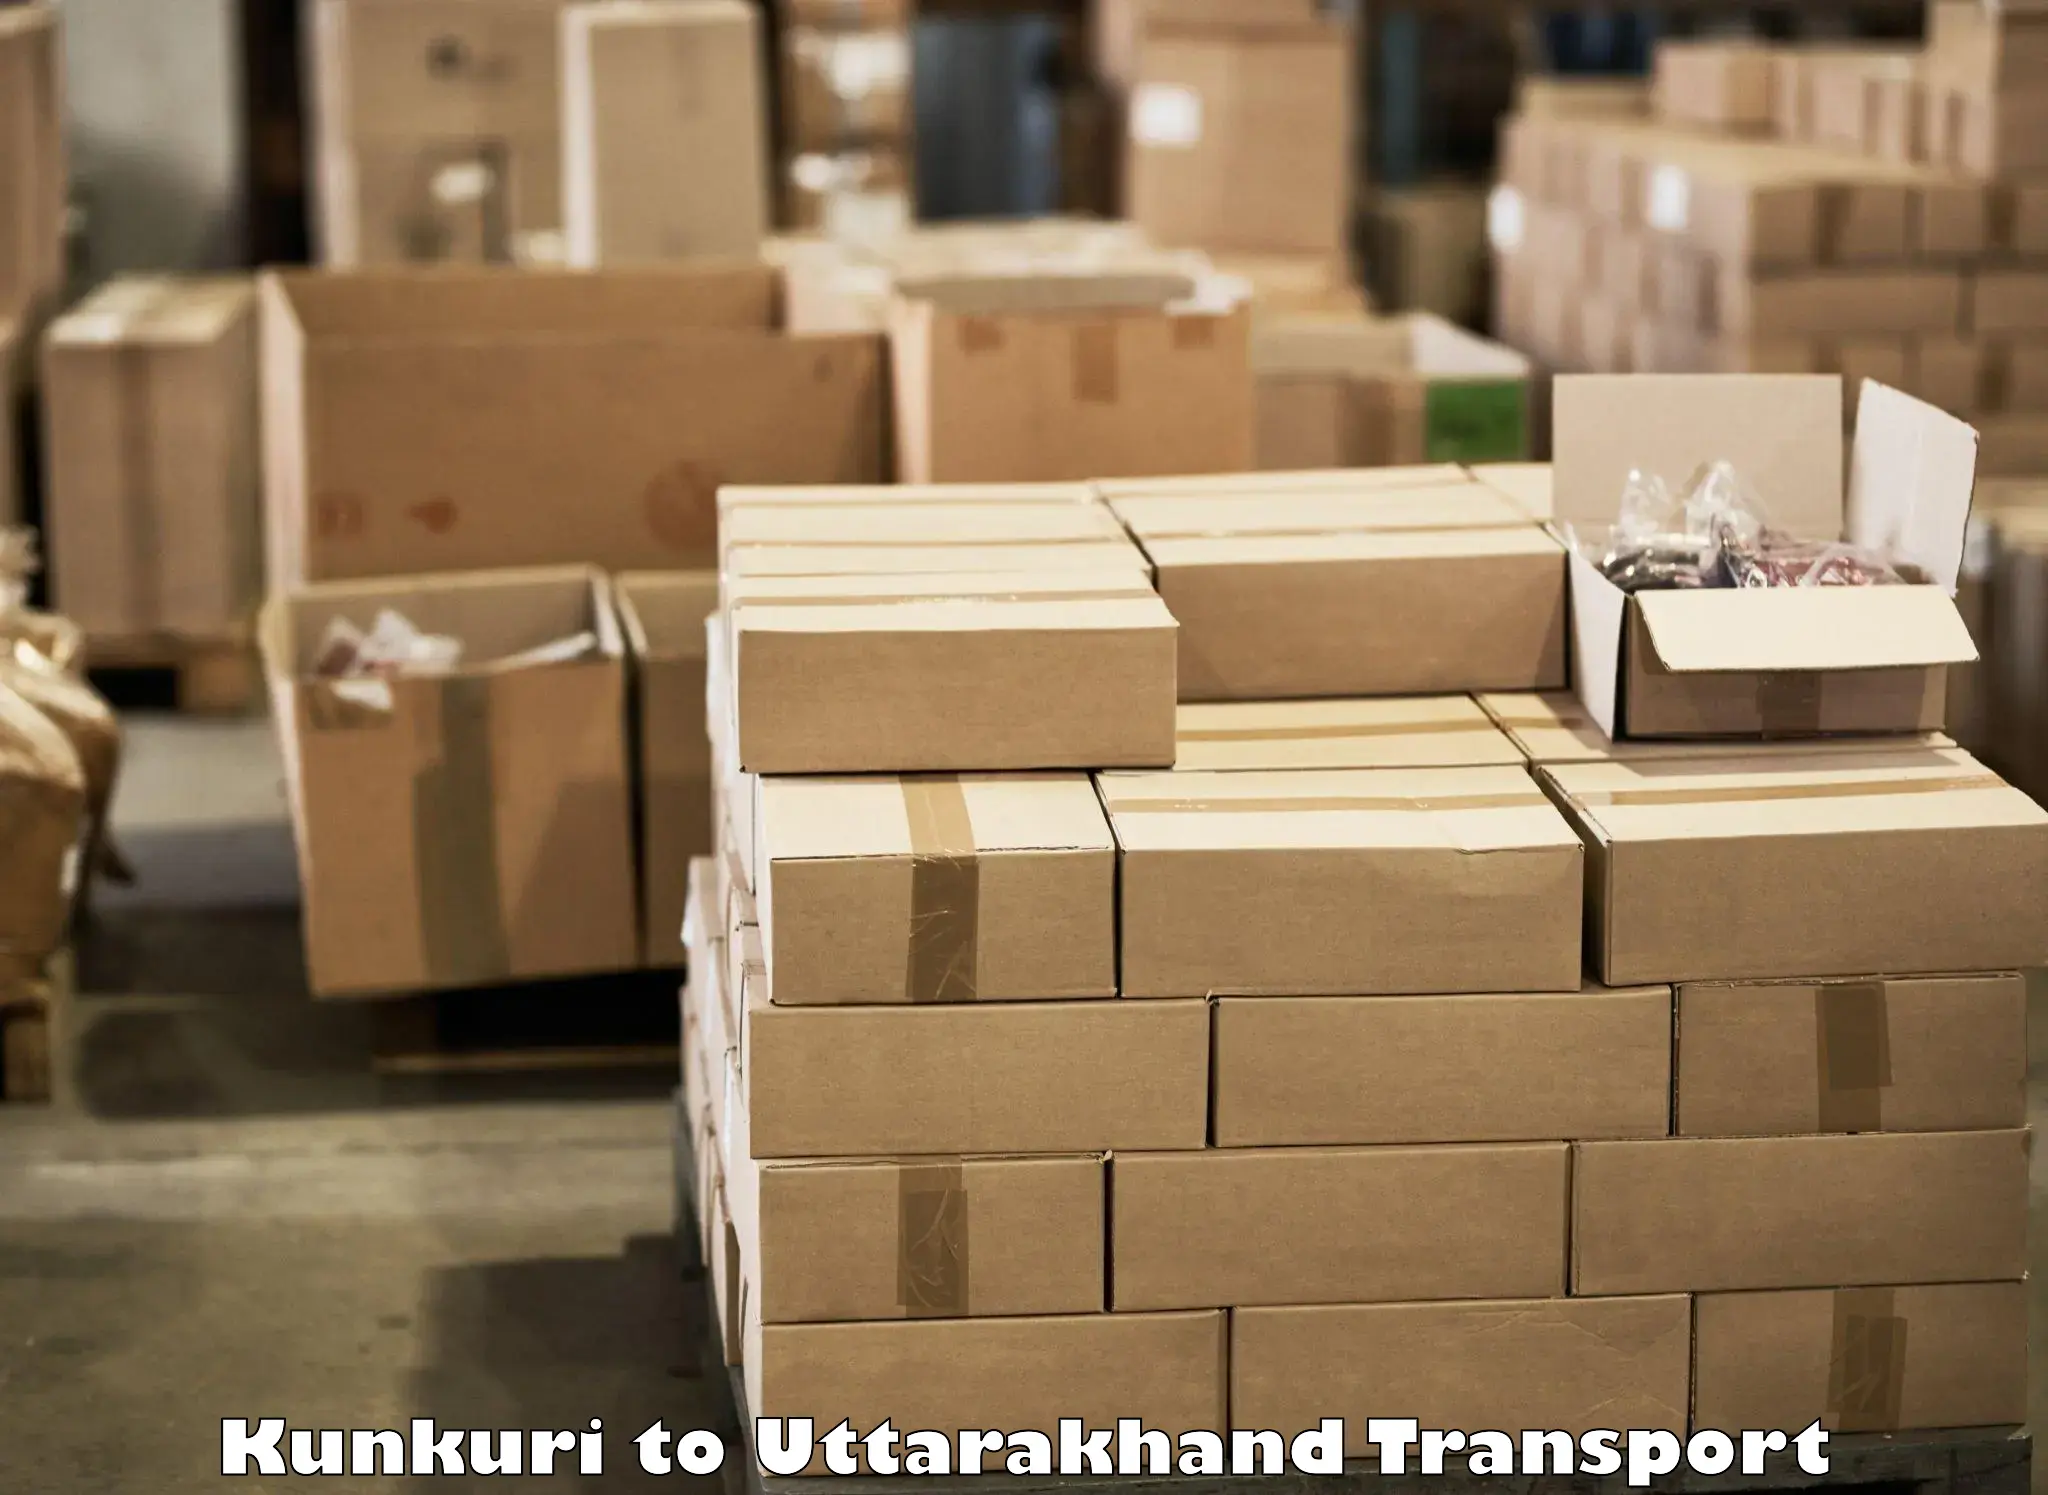 Furniture transport service Kunkuri to Dwarahat